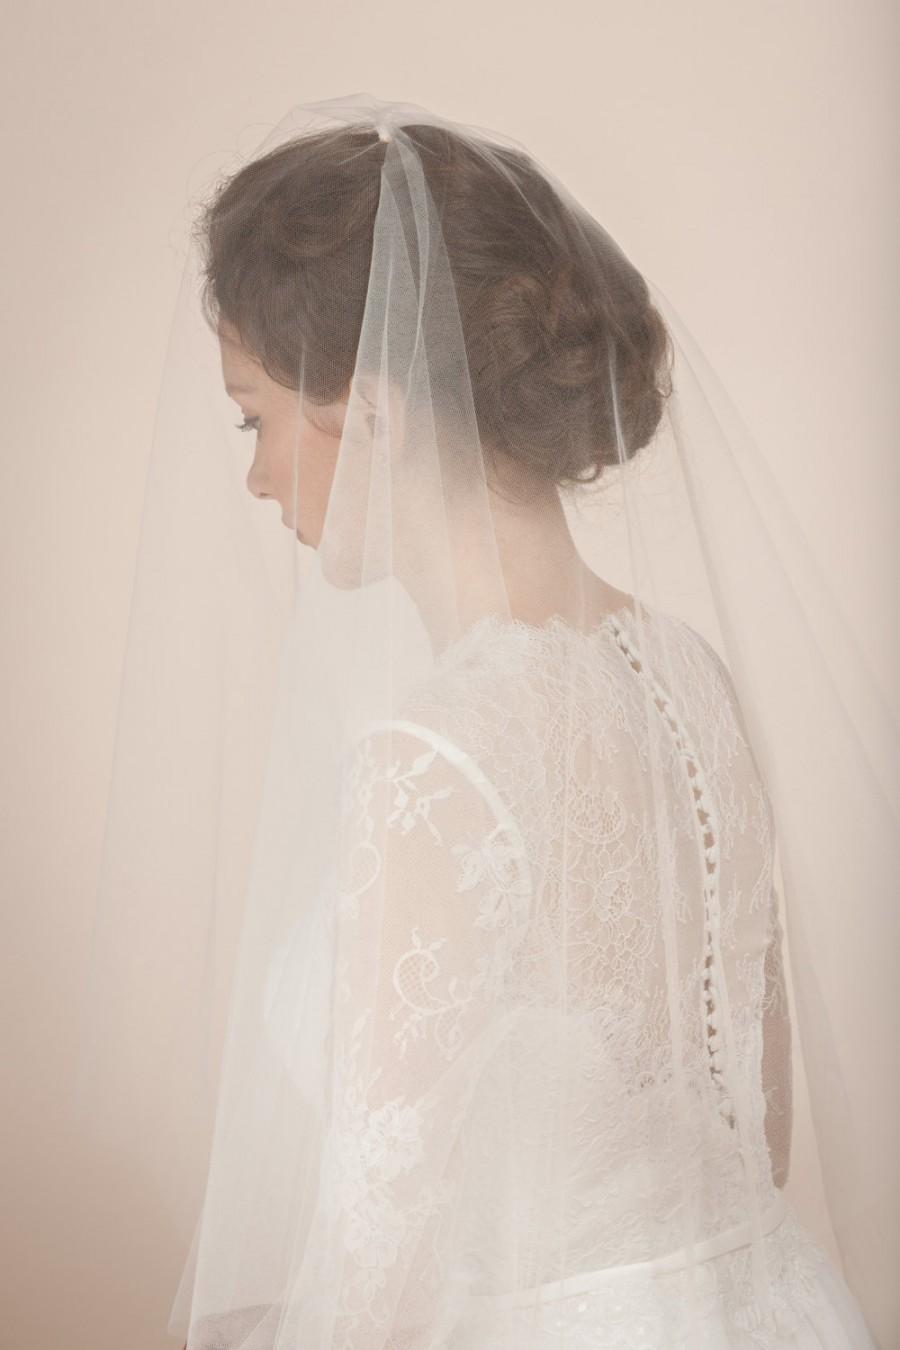 زفاف - Wedding veil, simple veil, cathedral veil, cathedral length veil, bridal veil with blusher, blusher veil in cathedral length -- Style 362